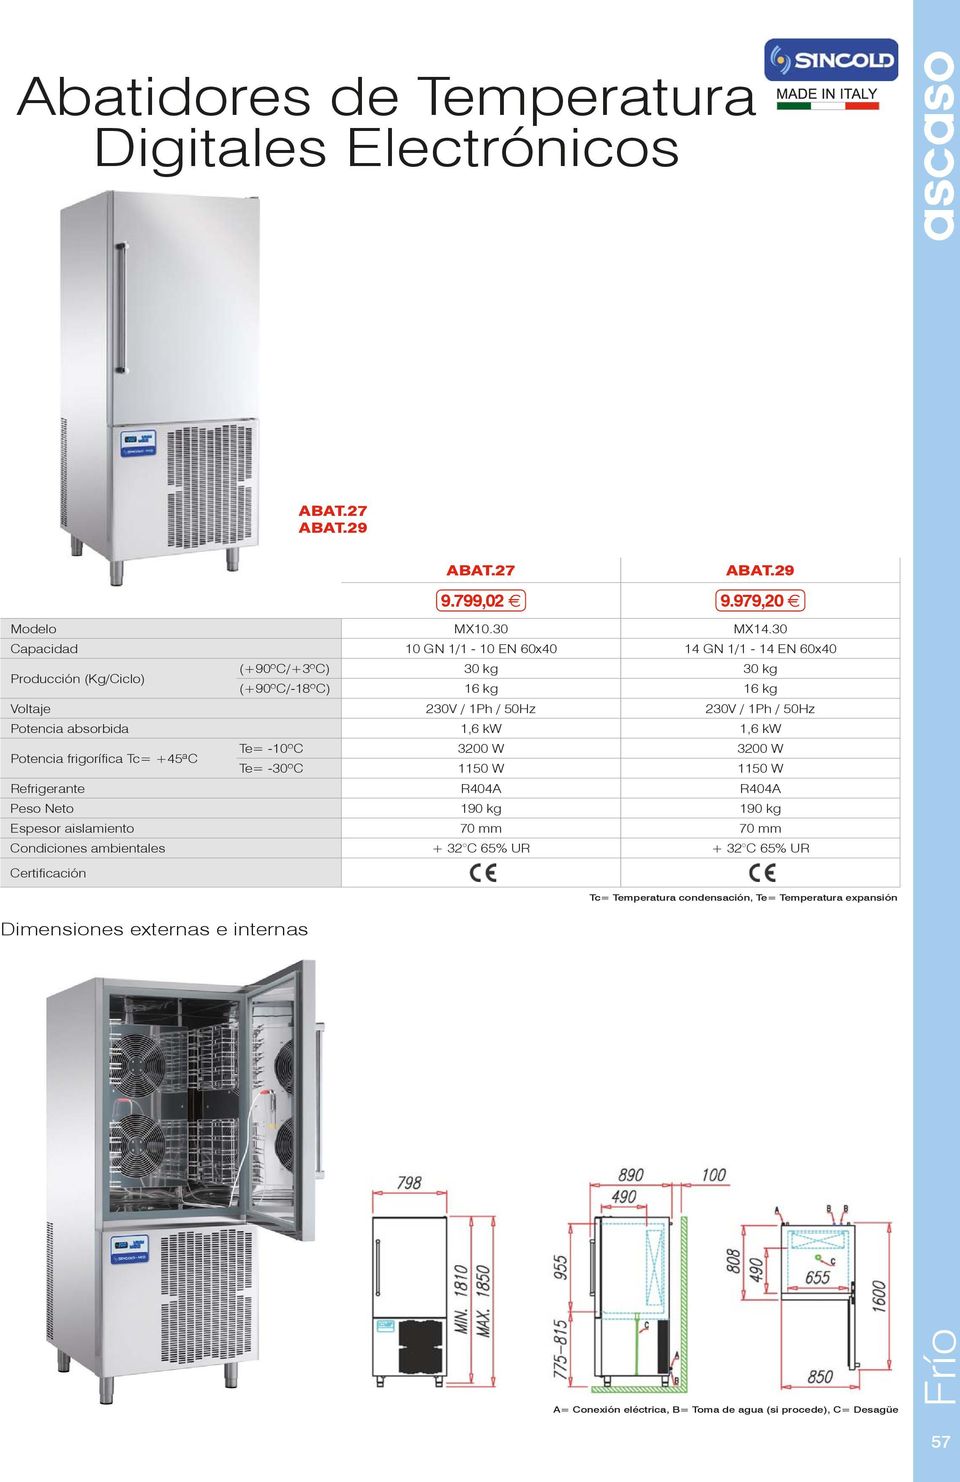 Voltaje 230V / 1Ph / 50Hz 230V / 1Ph / 50Hz Potencia absorbida 1,6 kw 1,6 kw Potencia frigorífica Tc=